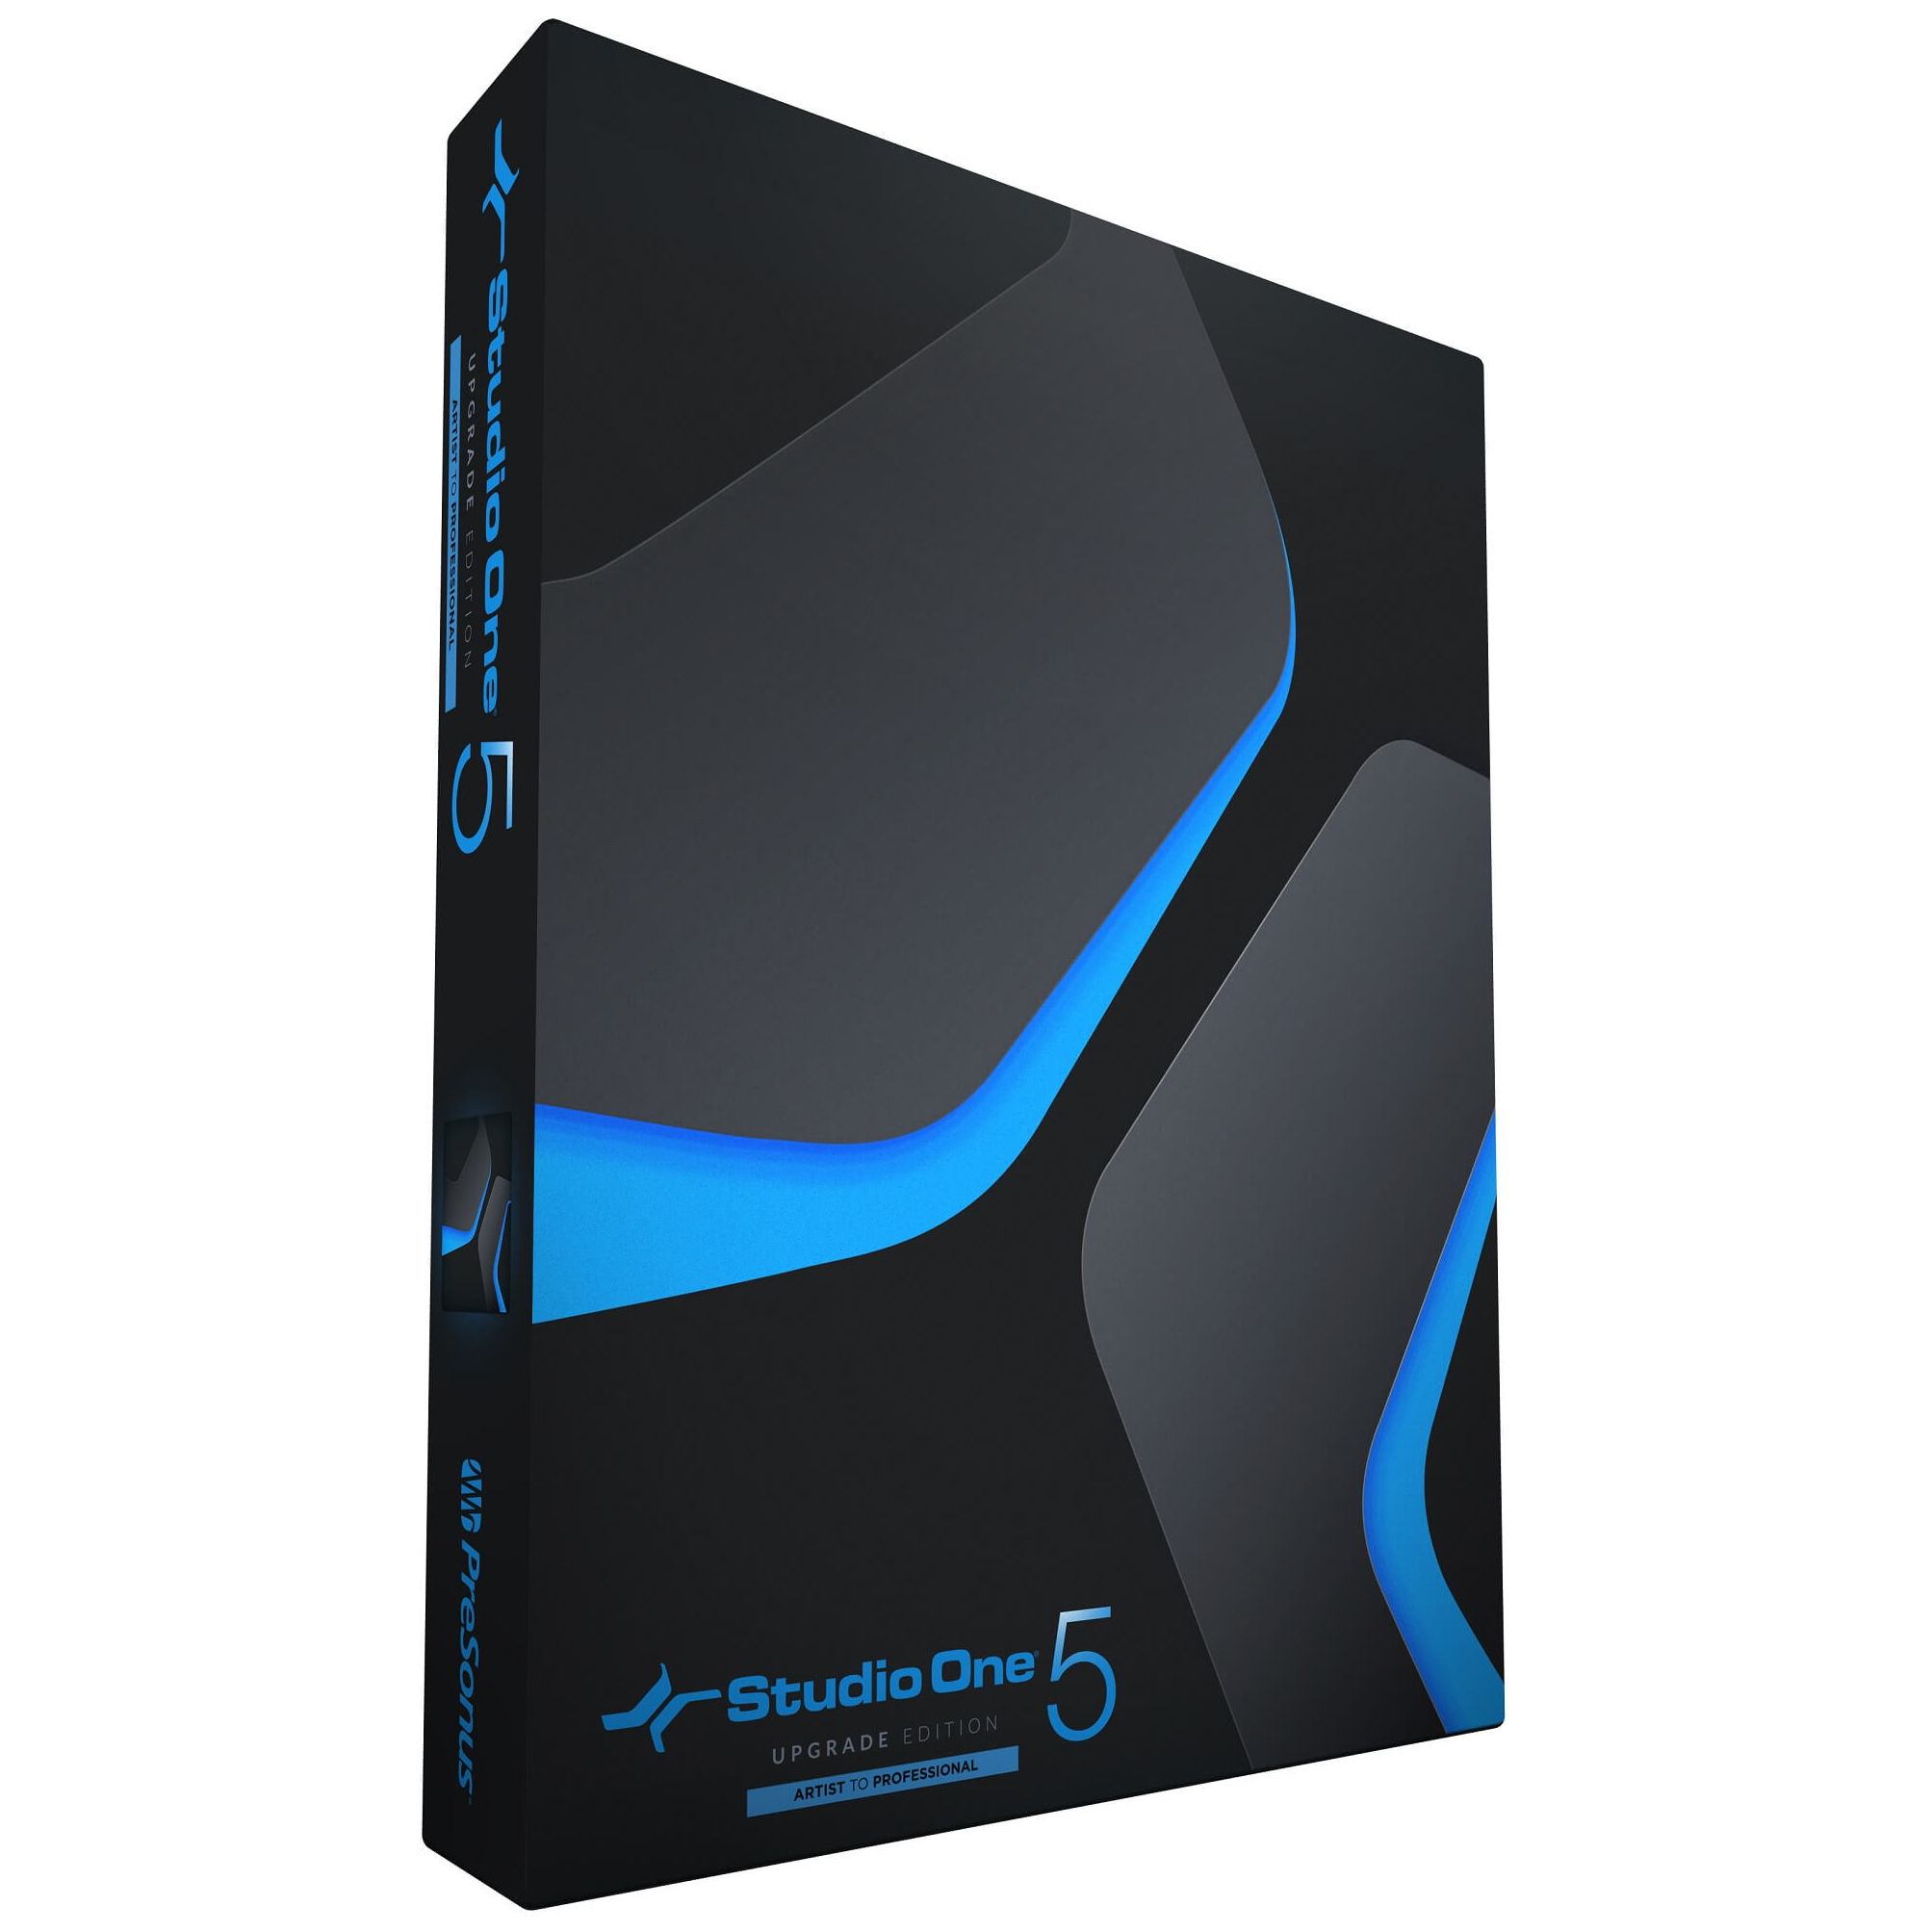 PreSonus Studio One 5 Professional Upgrade von Artist (alle Versionen) - Download Card